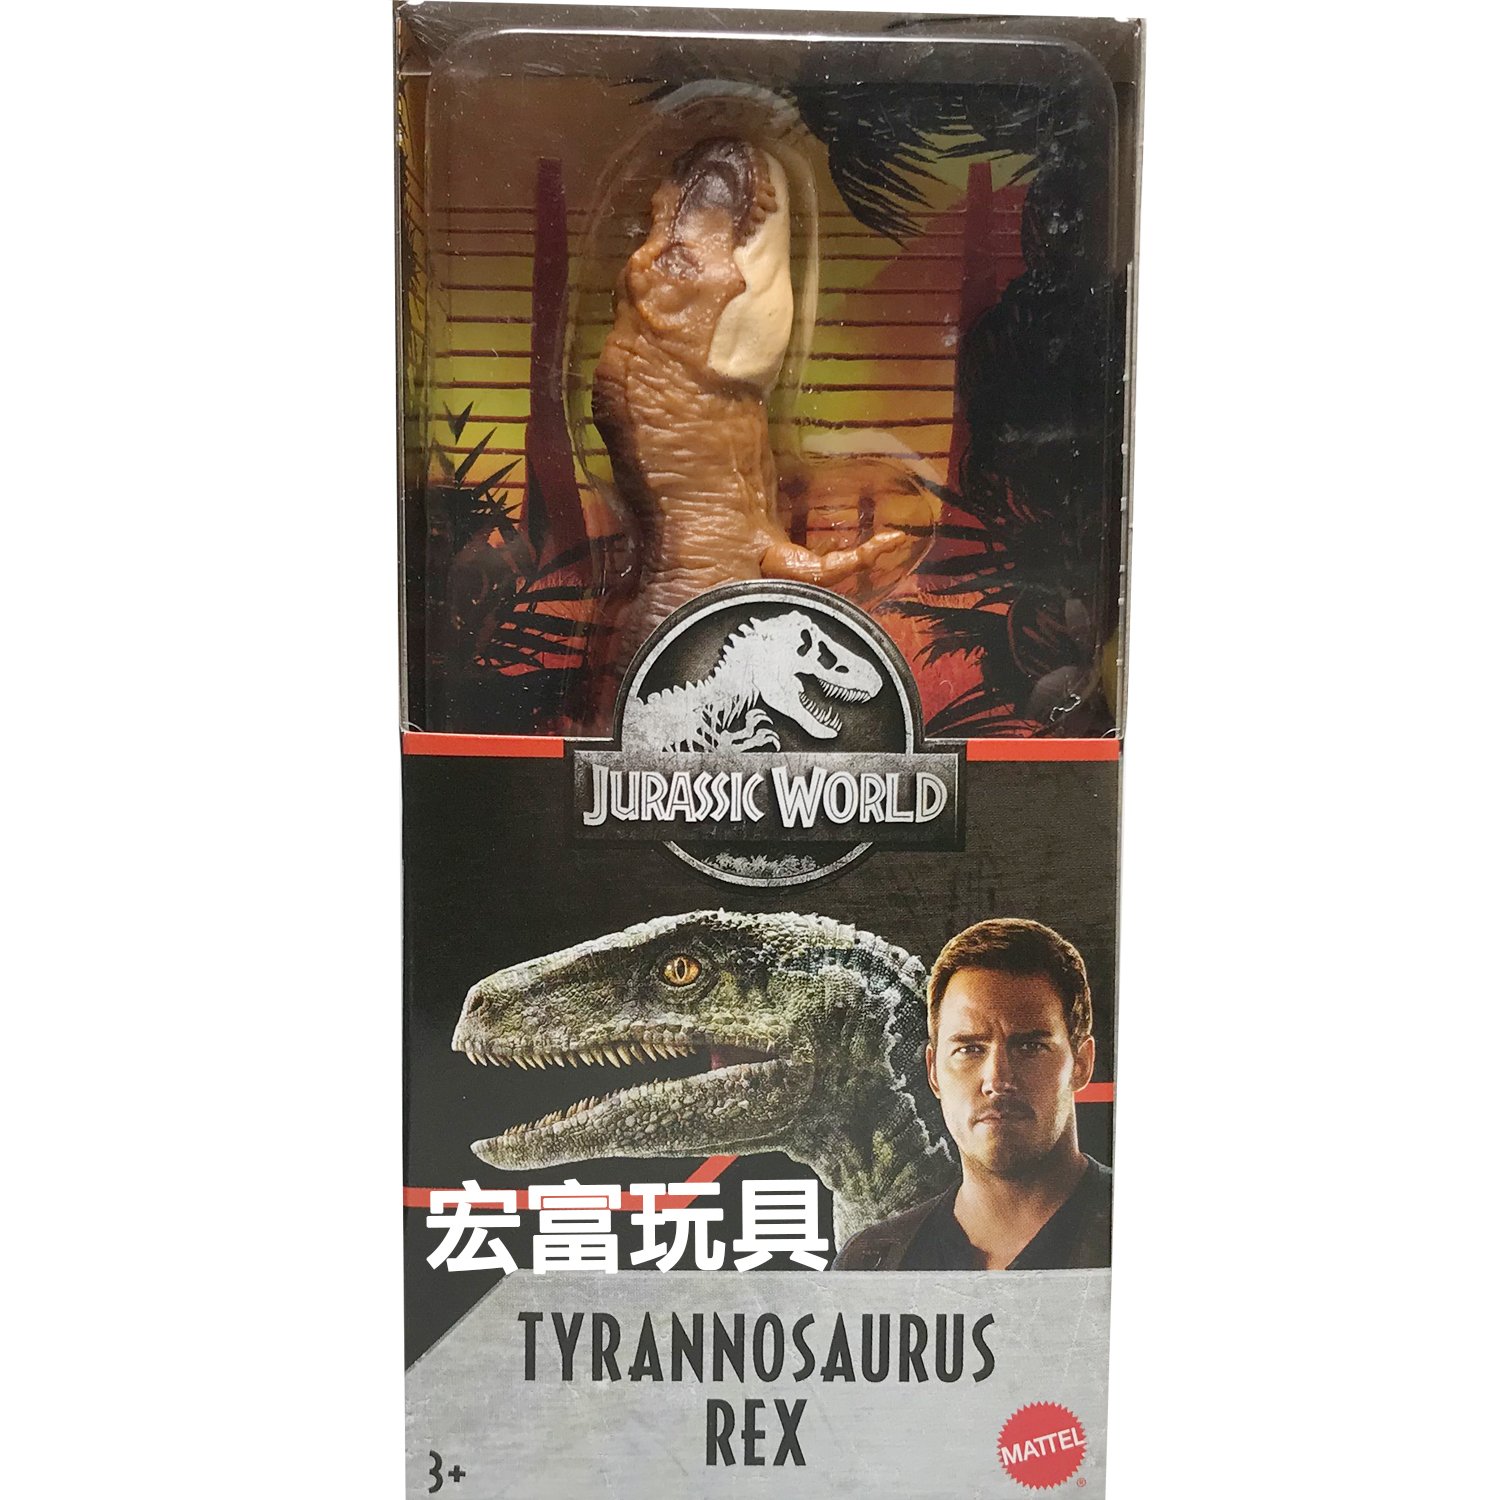 侏羅紀世界 6吋恐龍 (TYRANNOSAURUS REX) 咖啡